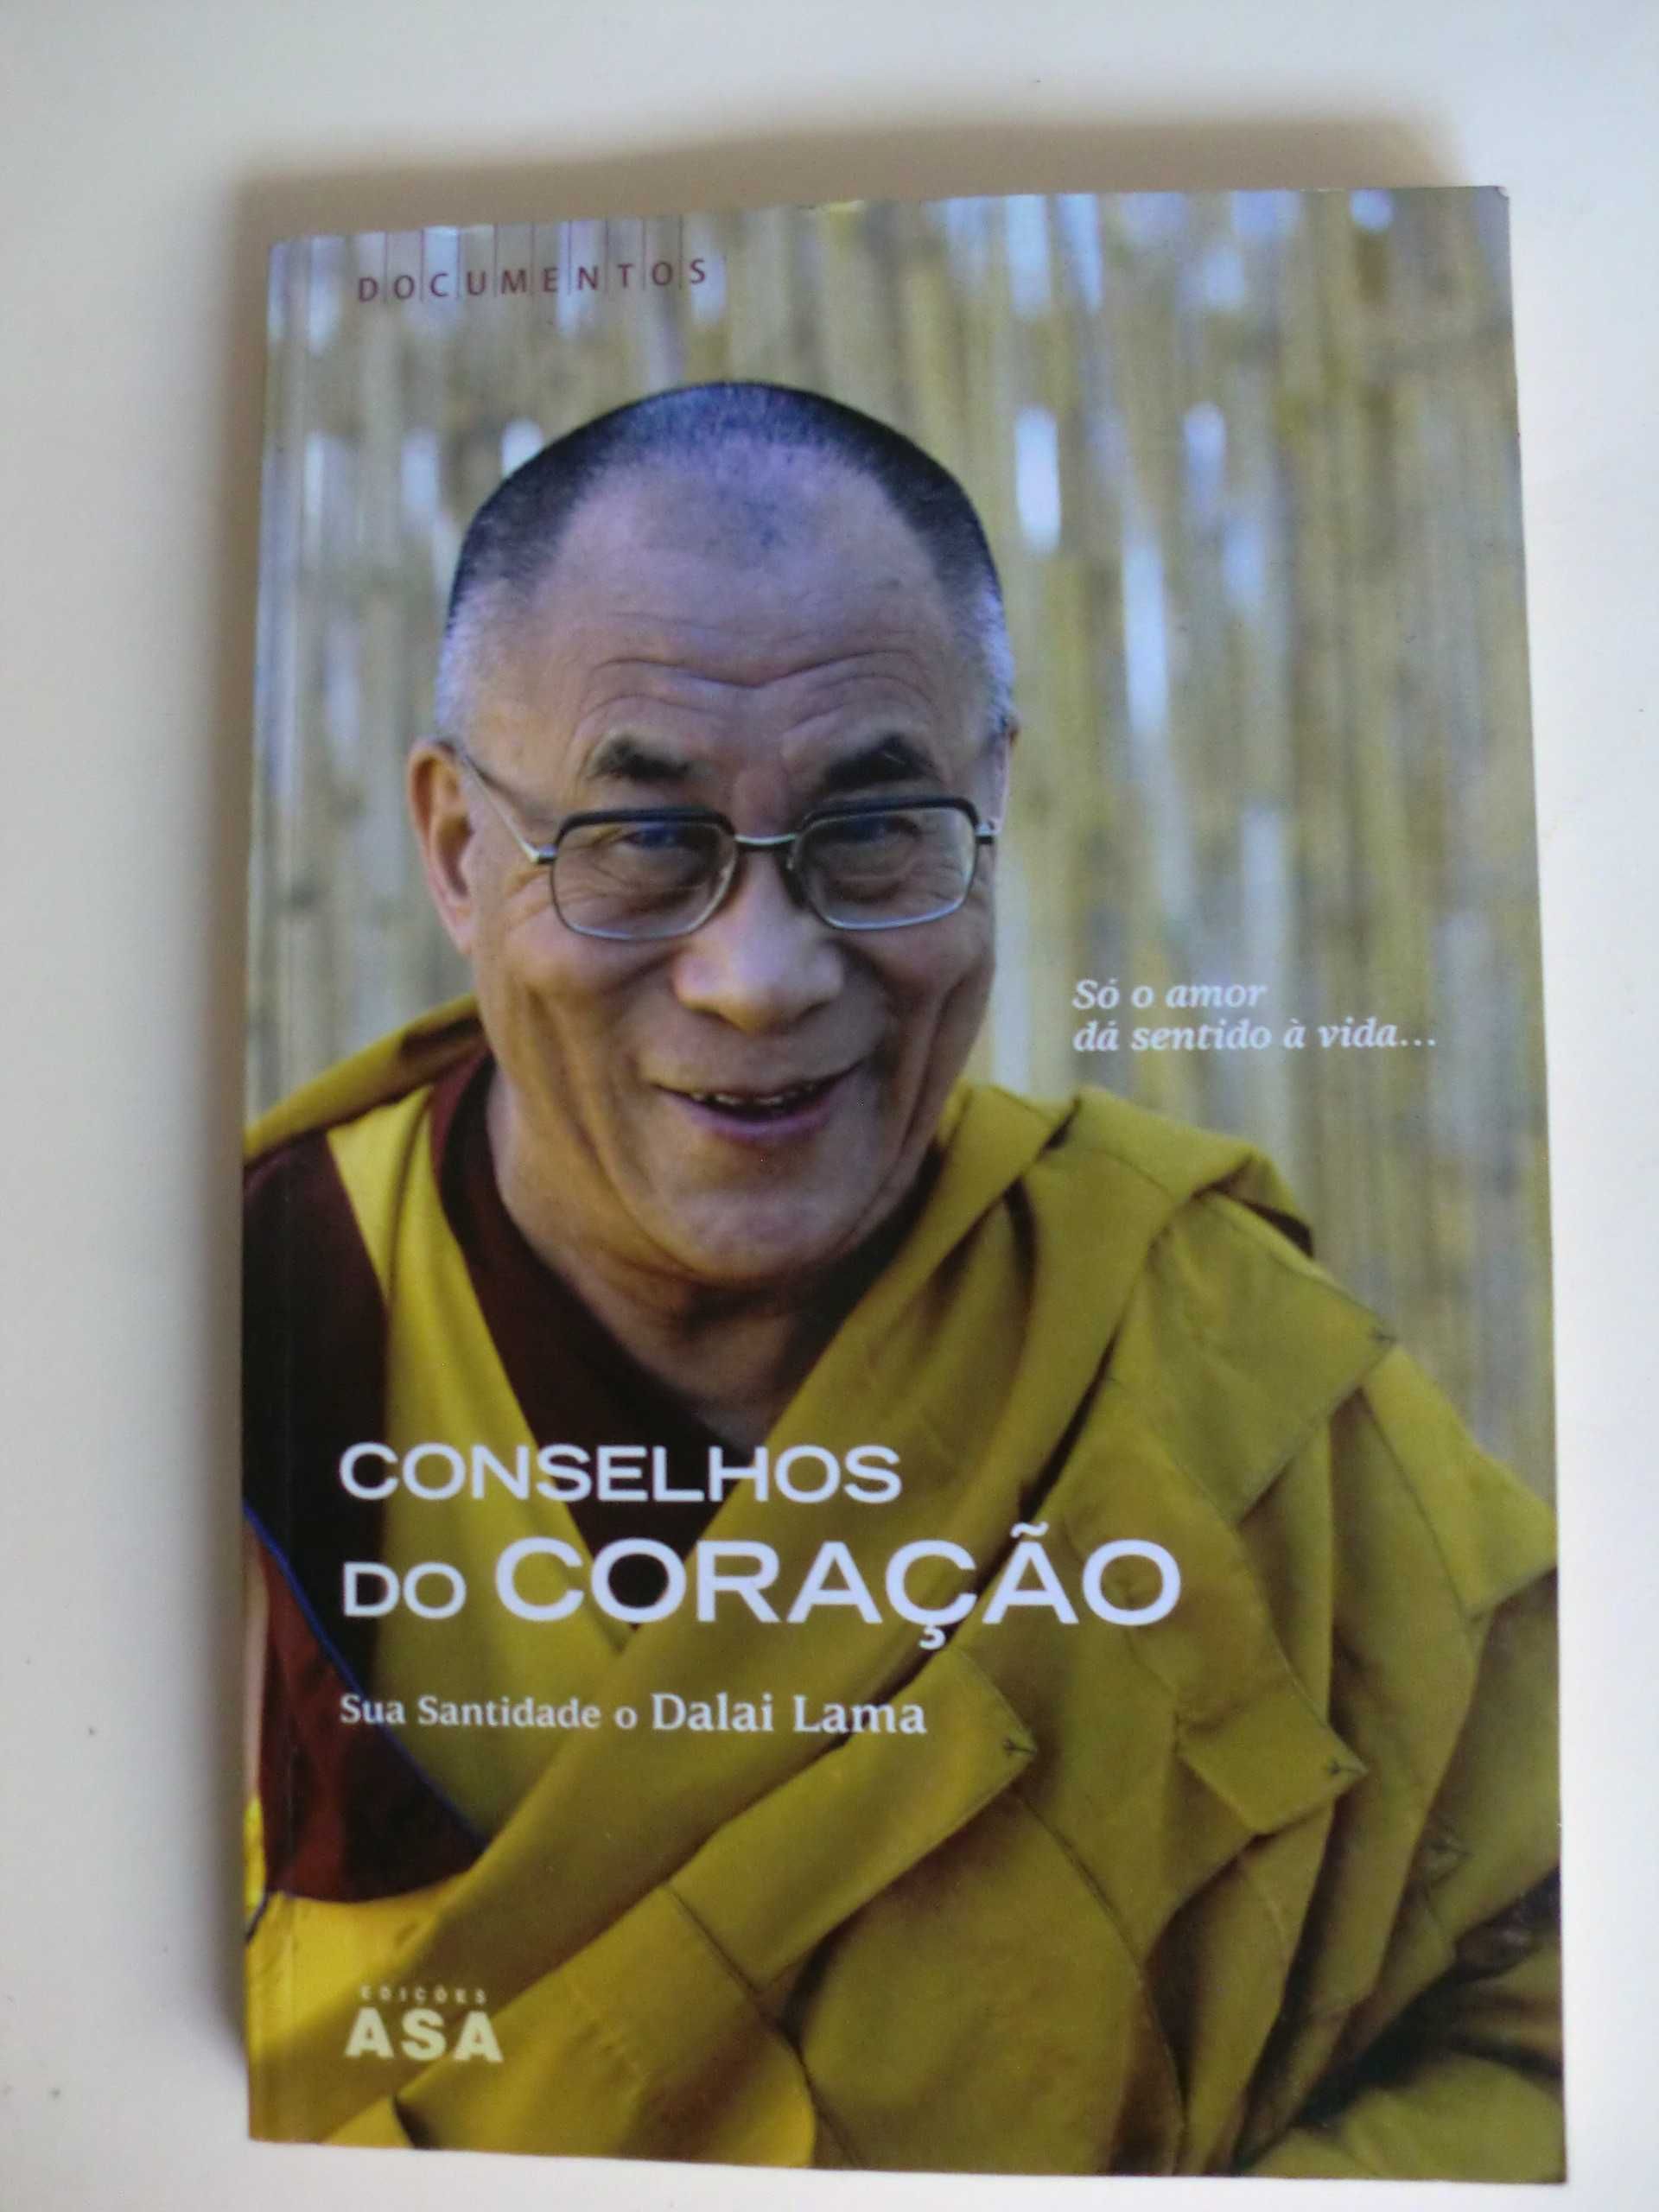 Conselhos do Coração
Sua Santidade o Dalai Lama